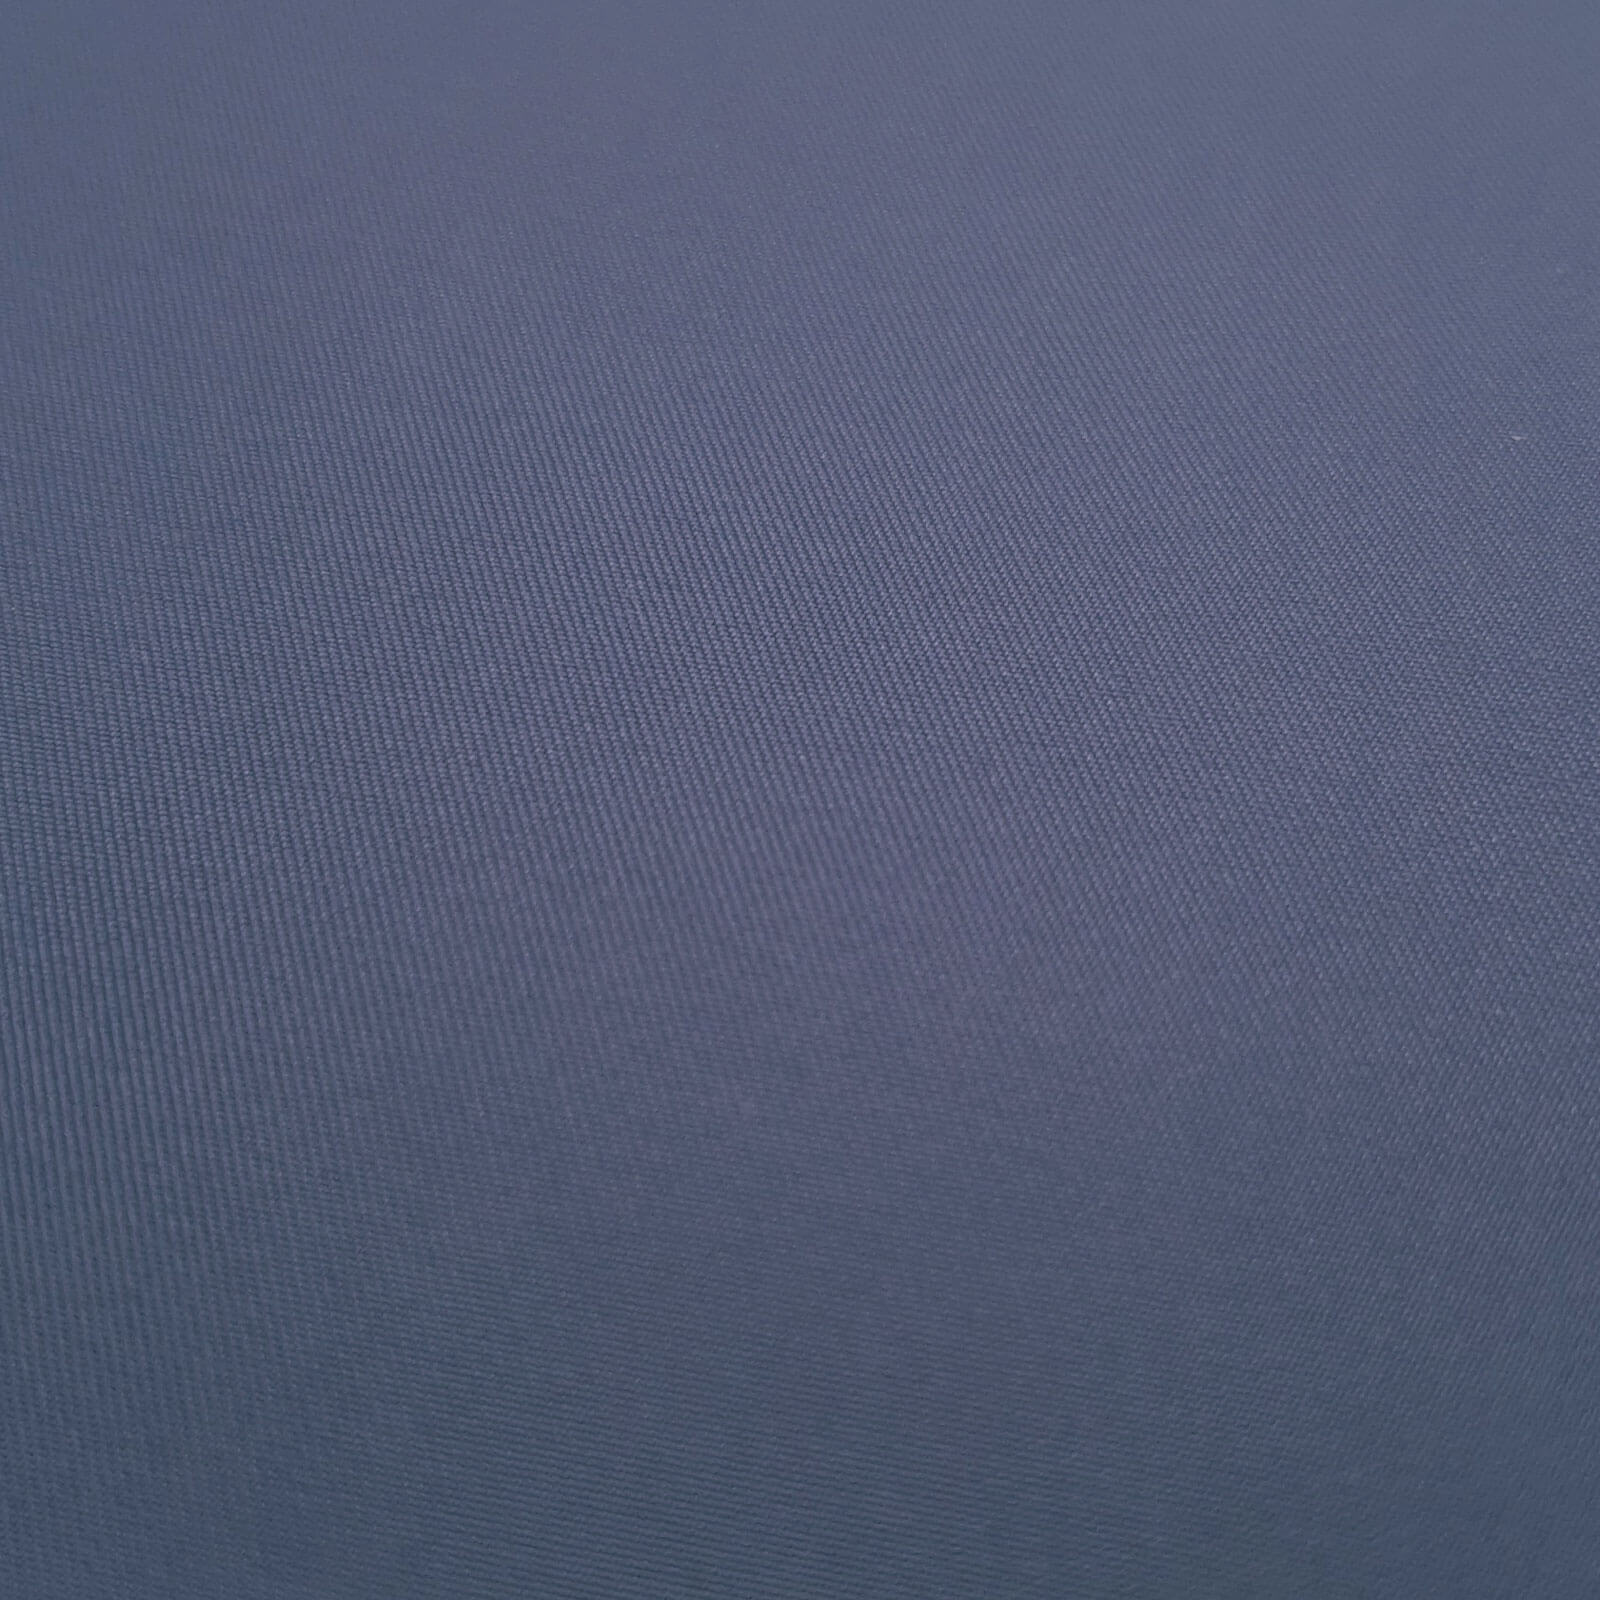 Laurena - Laminado exterior de tejido con membrana climática - Azul medio